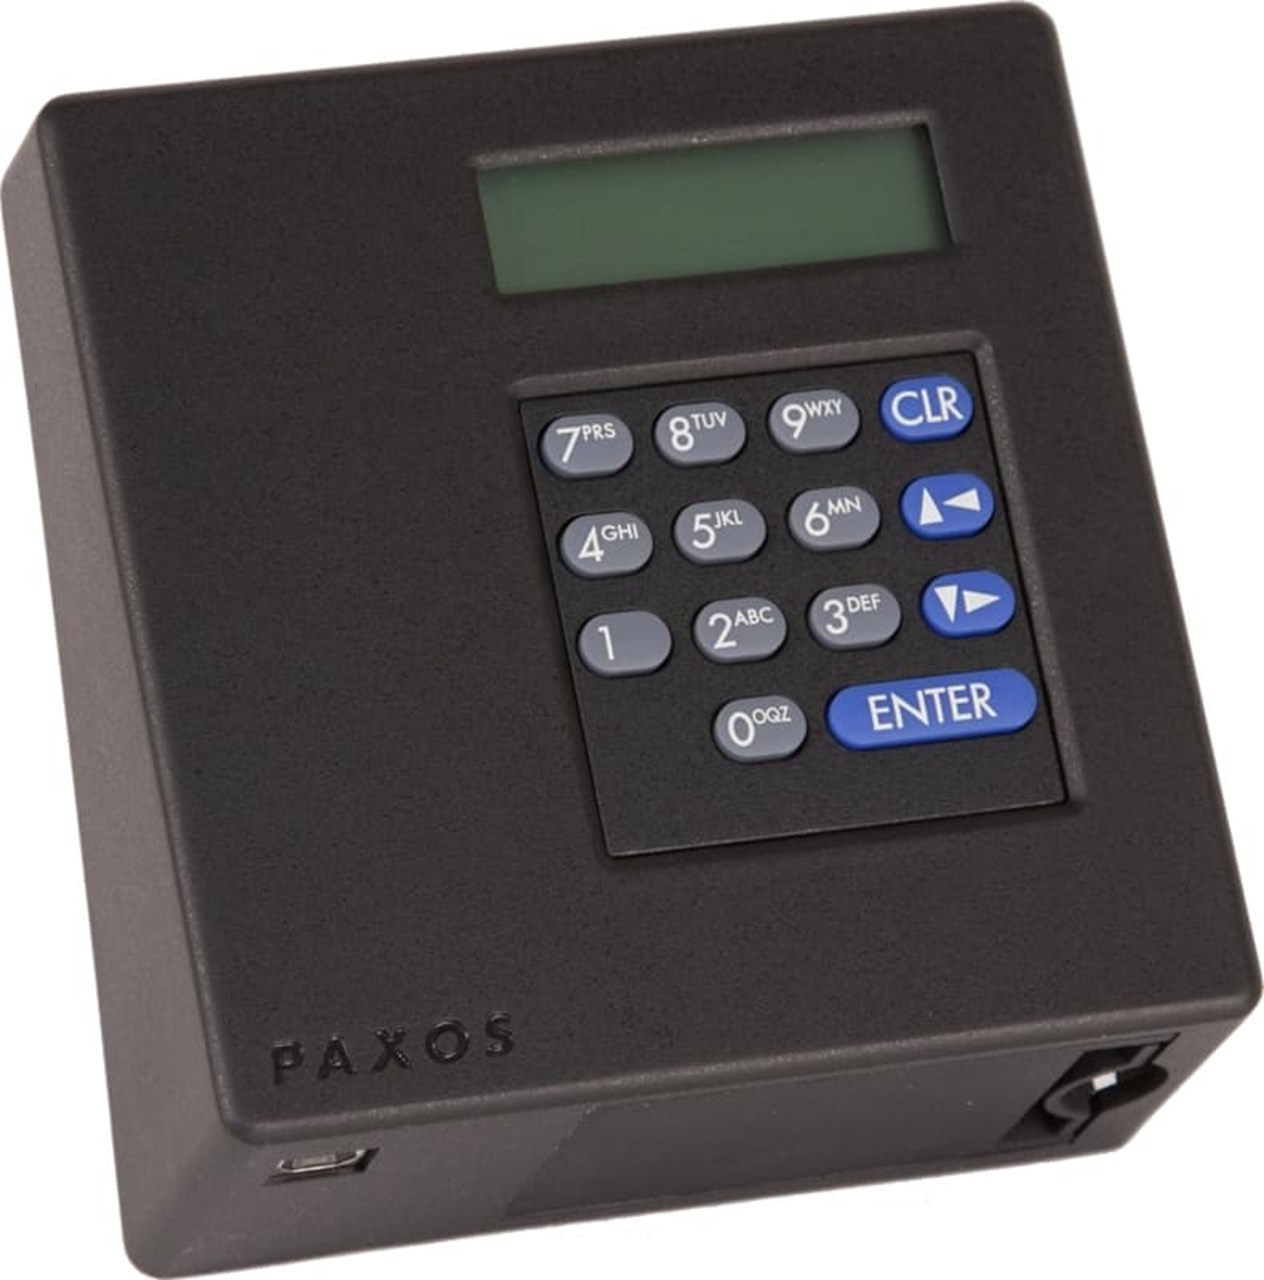 Visokosigurnosni elektronički redundantski sustav Paxos Advance IP - tipke